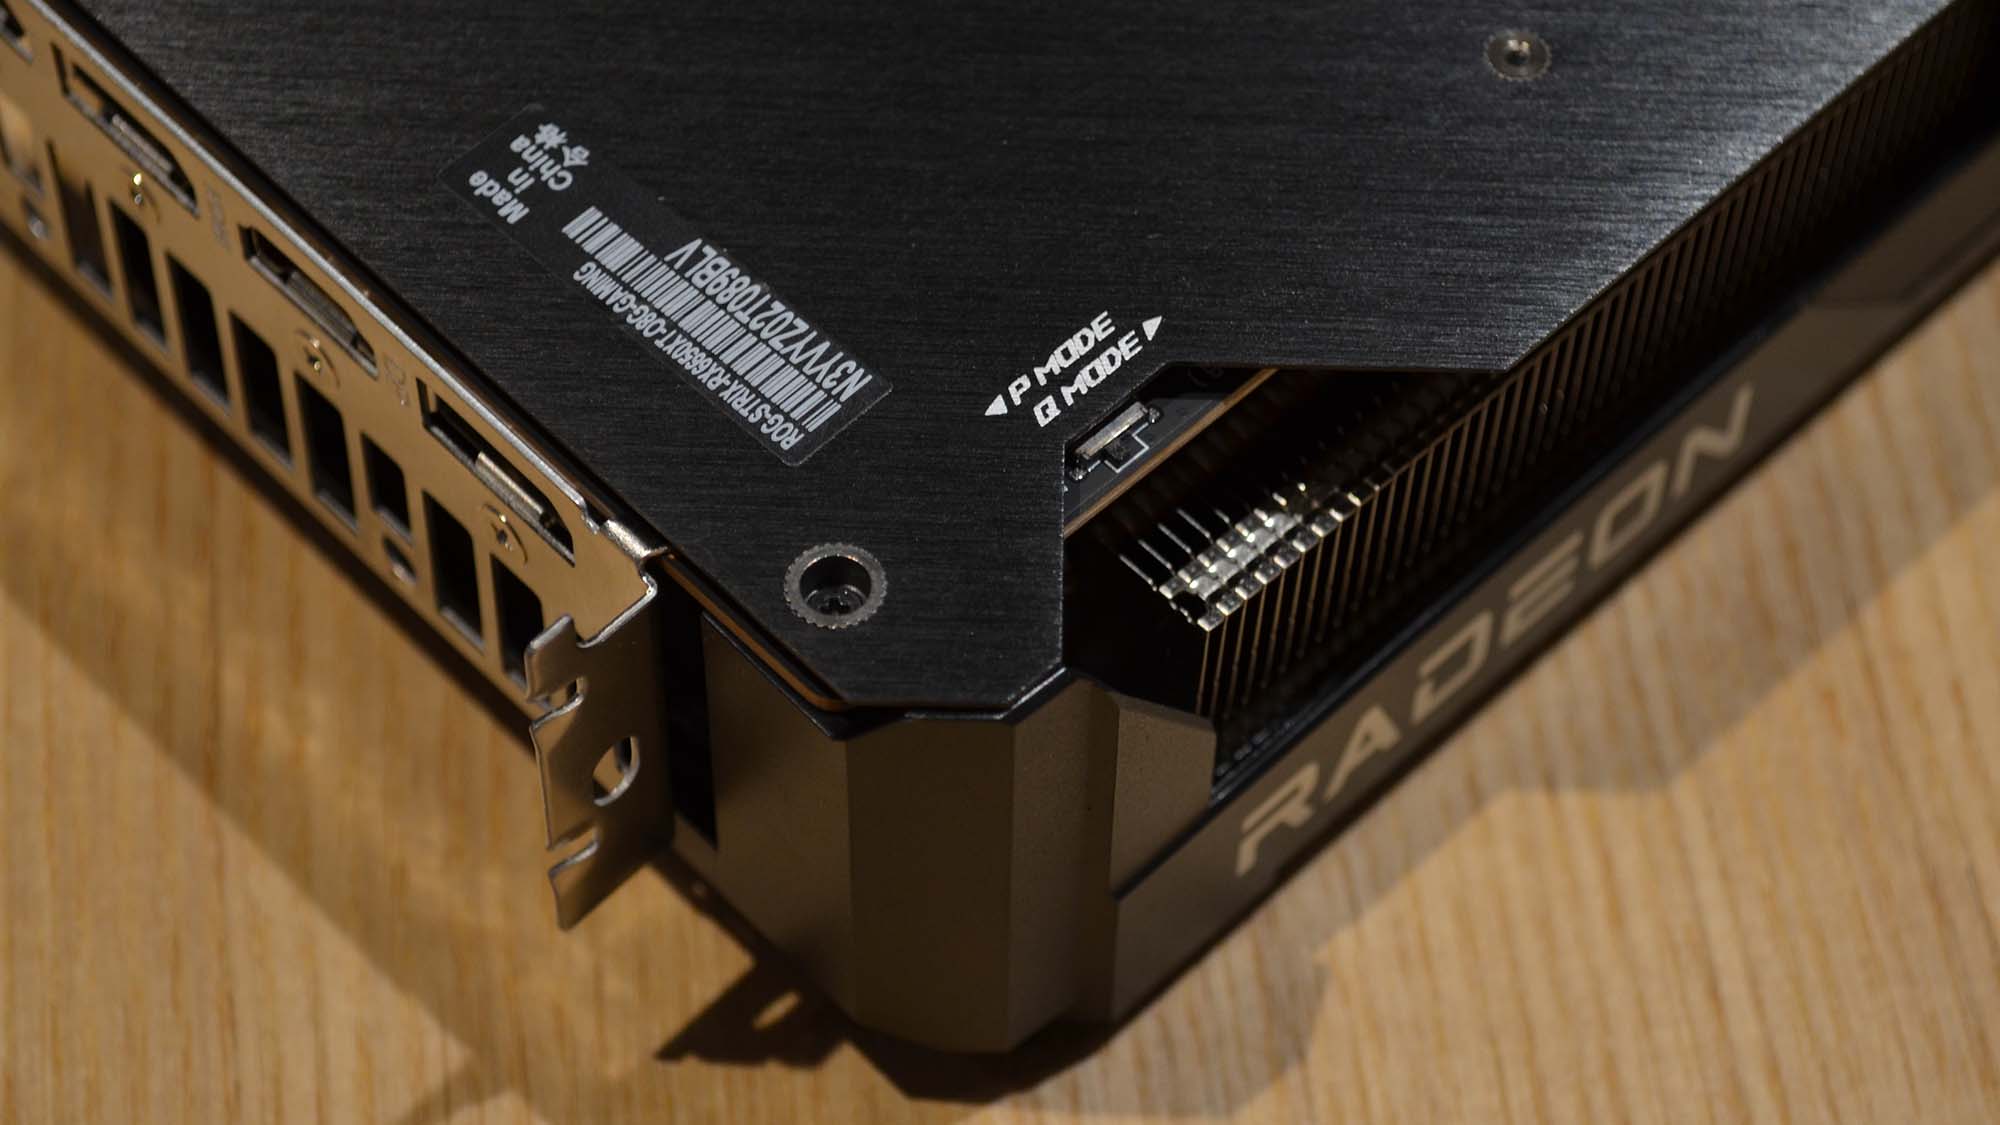 An AMD Radeon RX 6650 XT graphics card